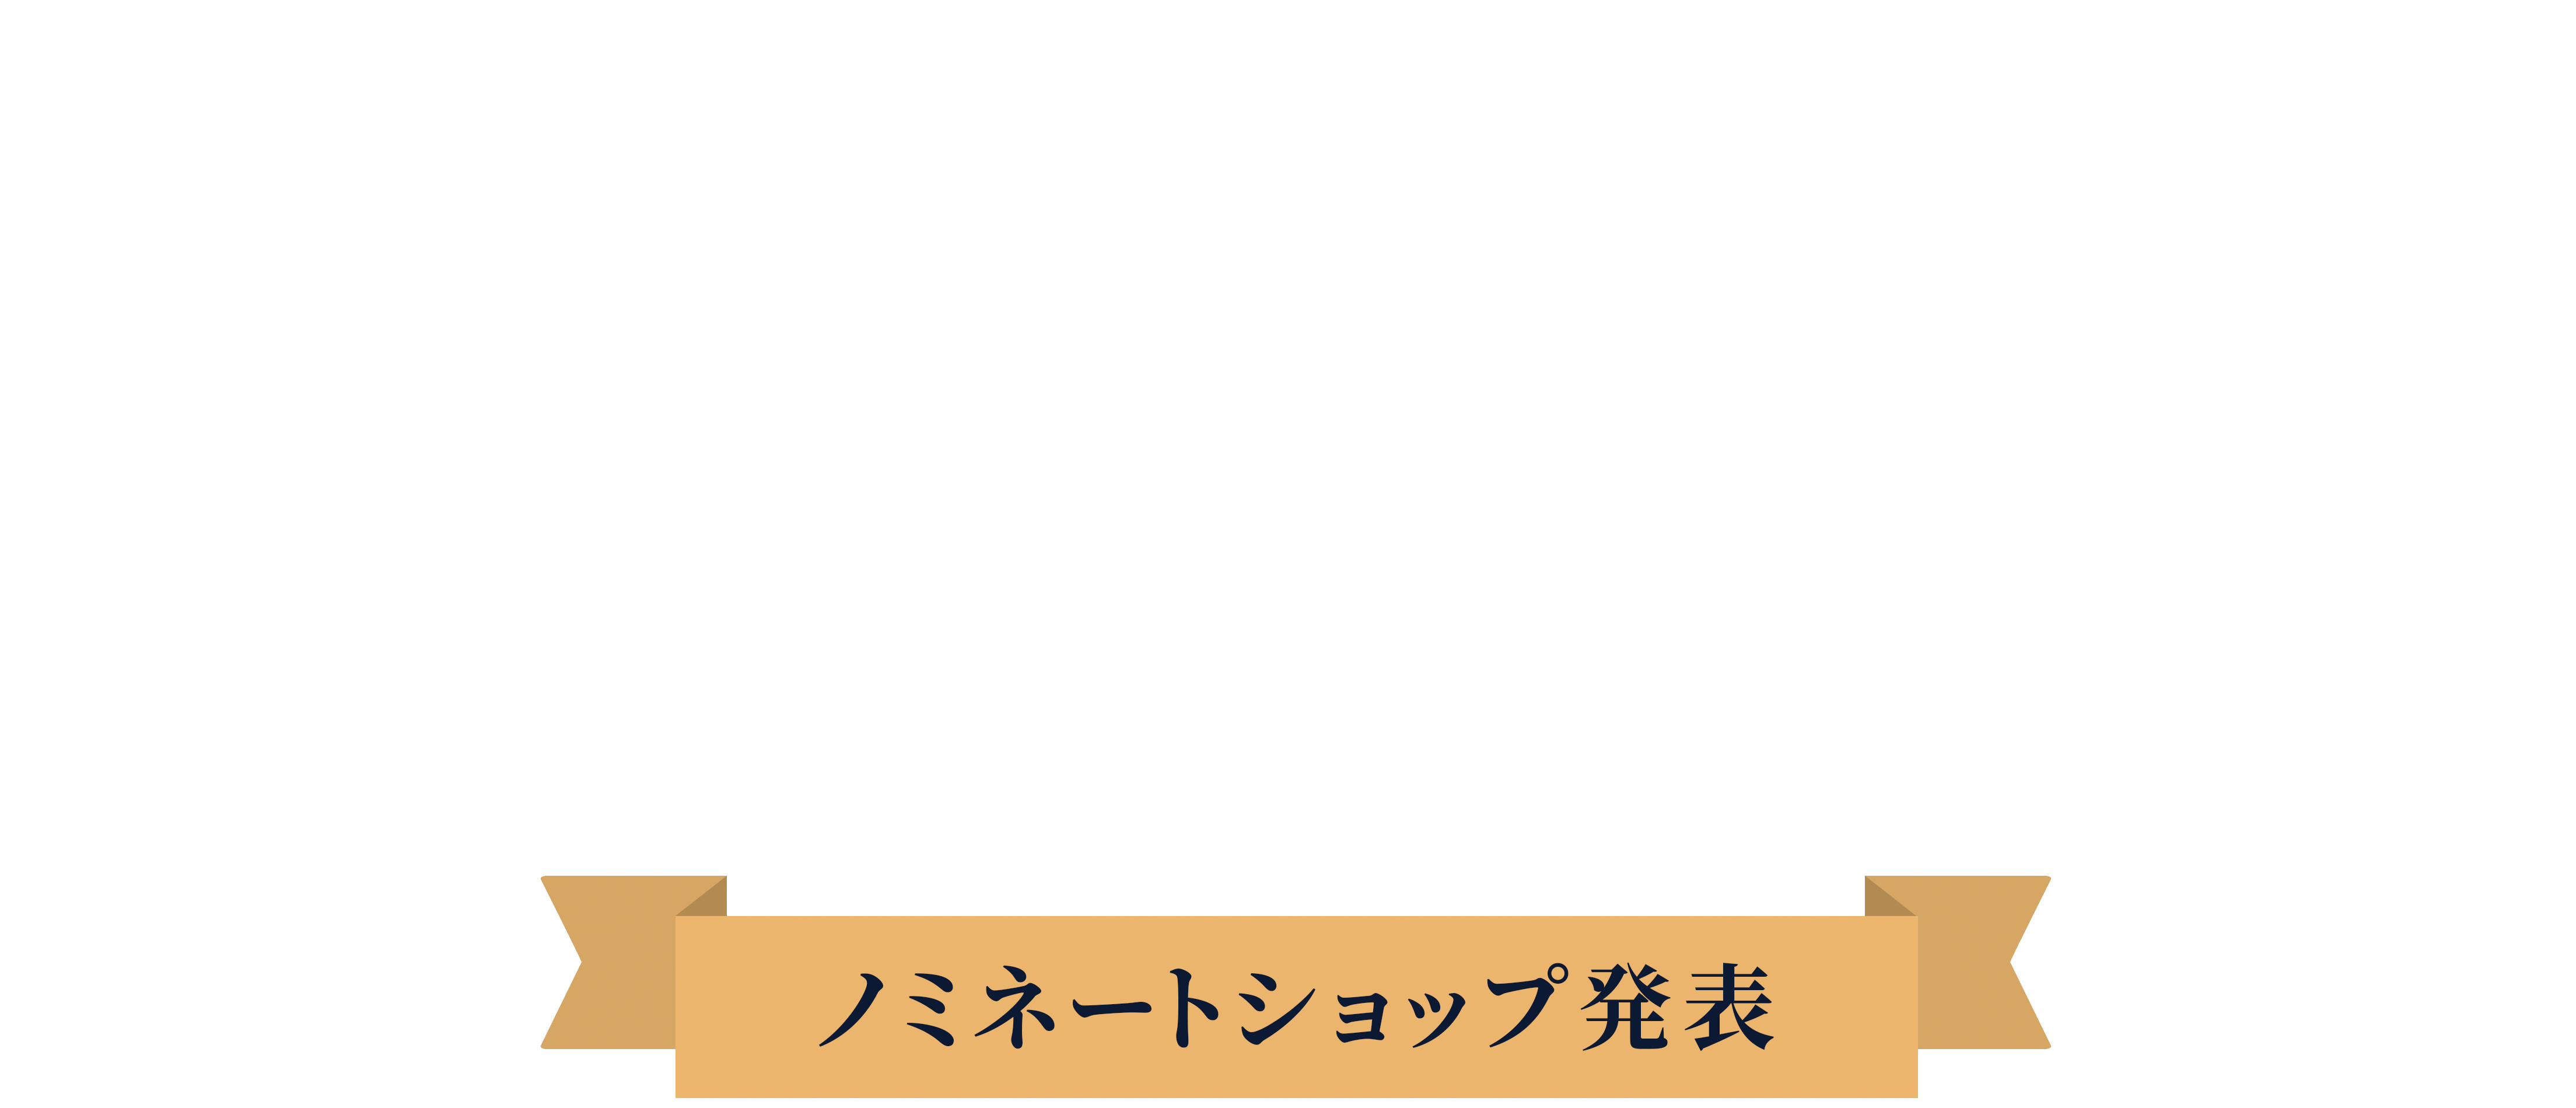 カラーミーショップ大賞2023-ノミネートショップ発表